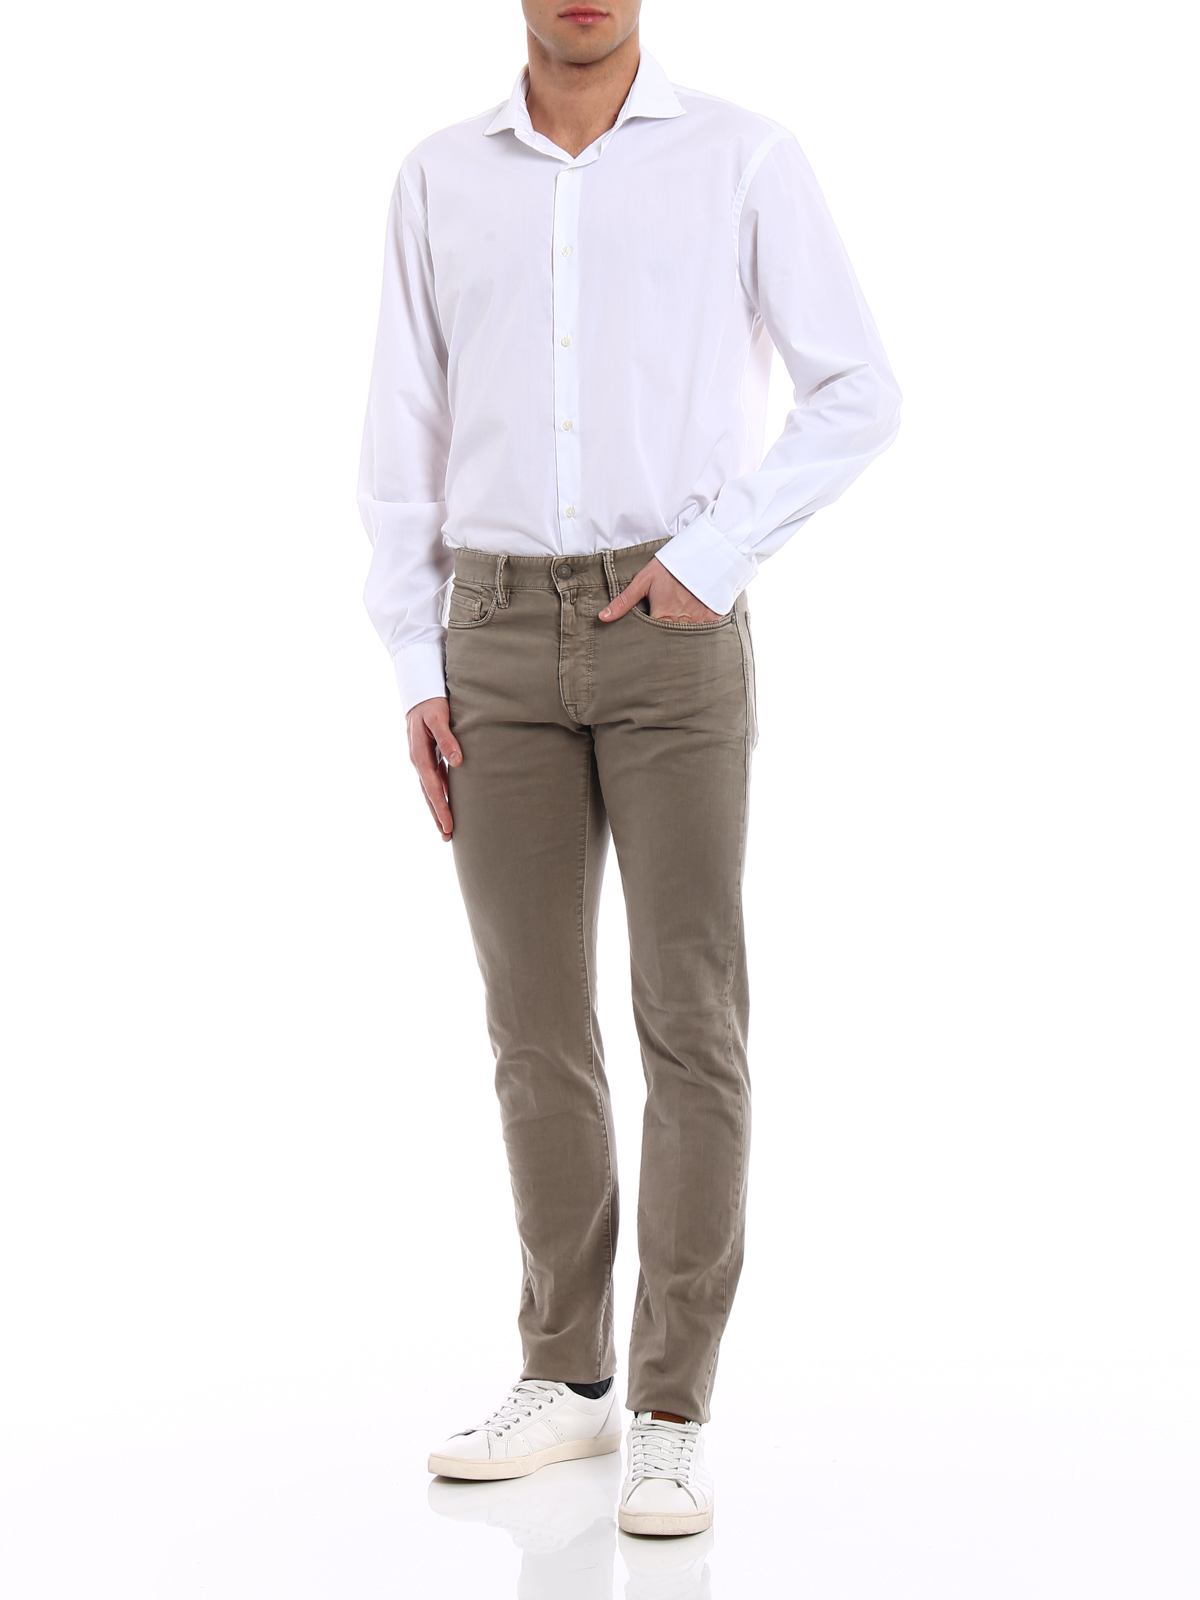 Incotex Slim-Fit Five-Pocket Jean-style Pants ~ Khaki Color